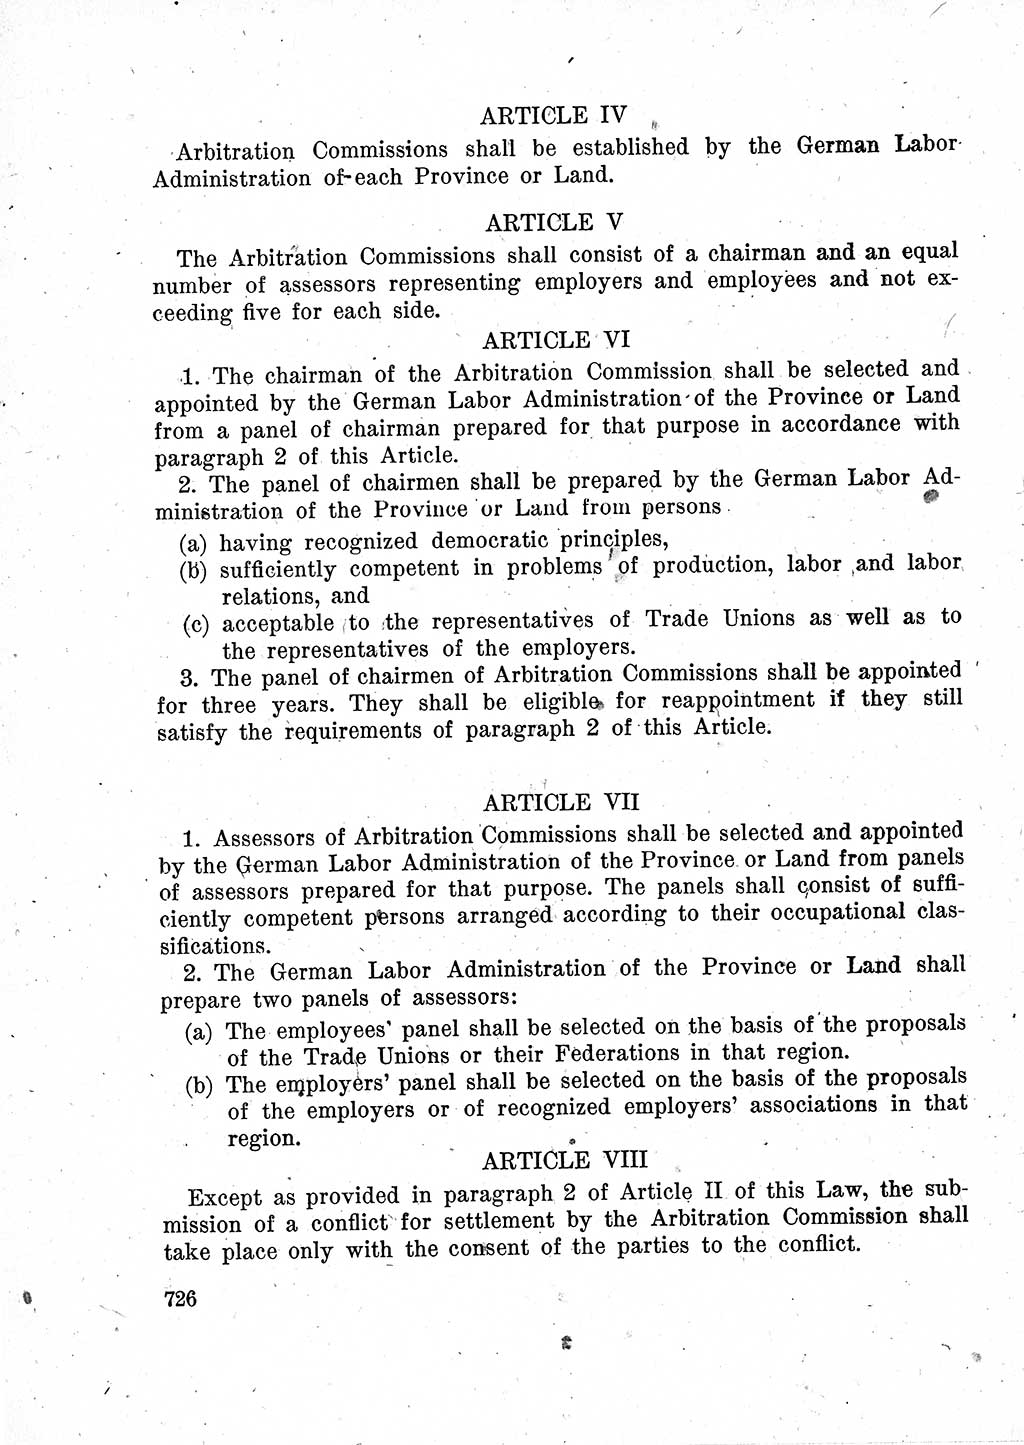 Das Recht der Besatzungsmacht (Deutschland), Proklamationen, Deklerationen, Verordnungen, Gesetze und Bekanntmachungen 1947, Seite 726 (R. Bes. Dtl. 1947, S. 726)